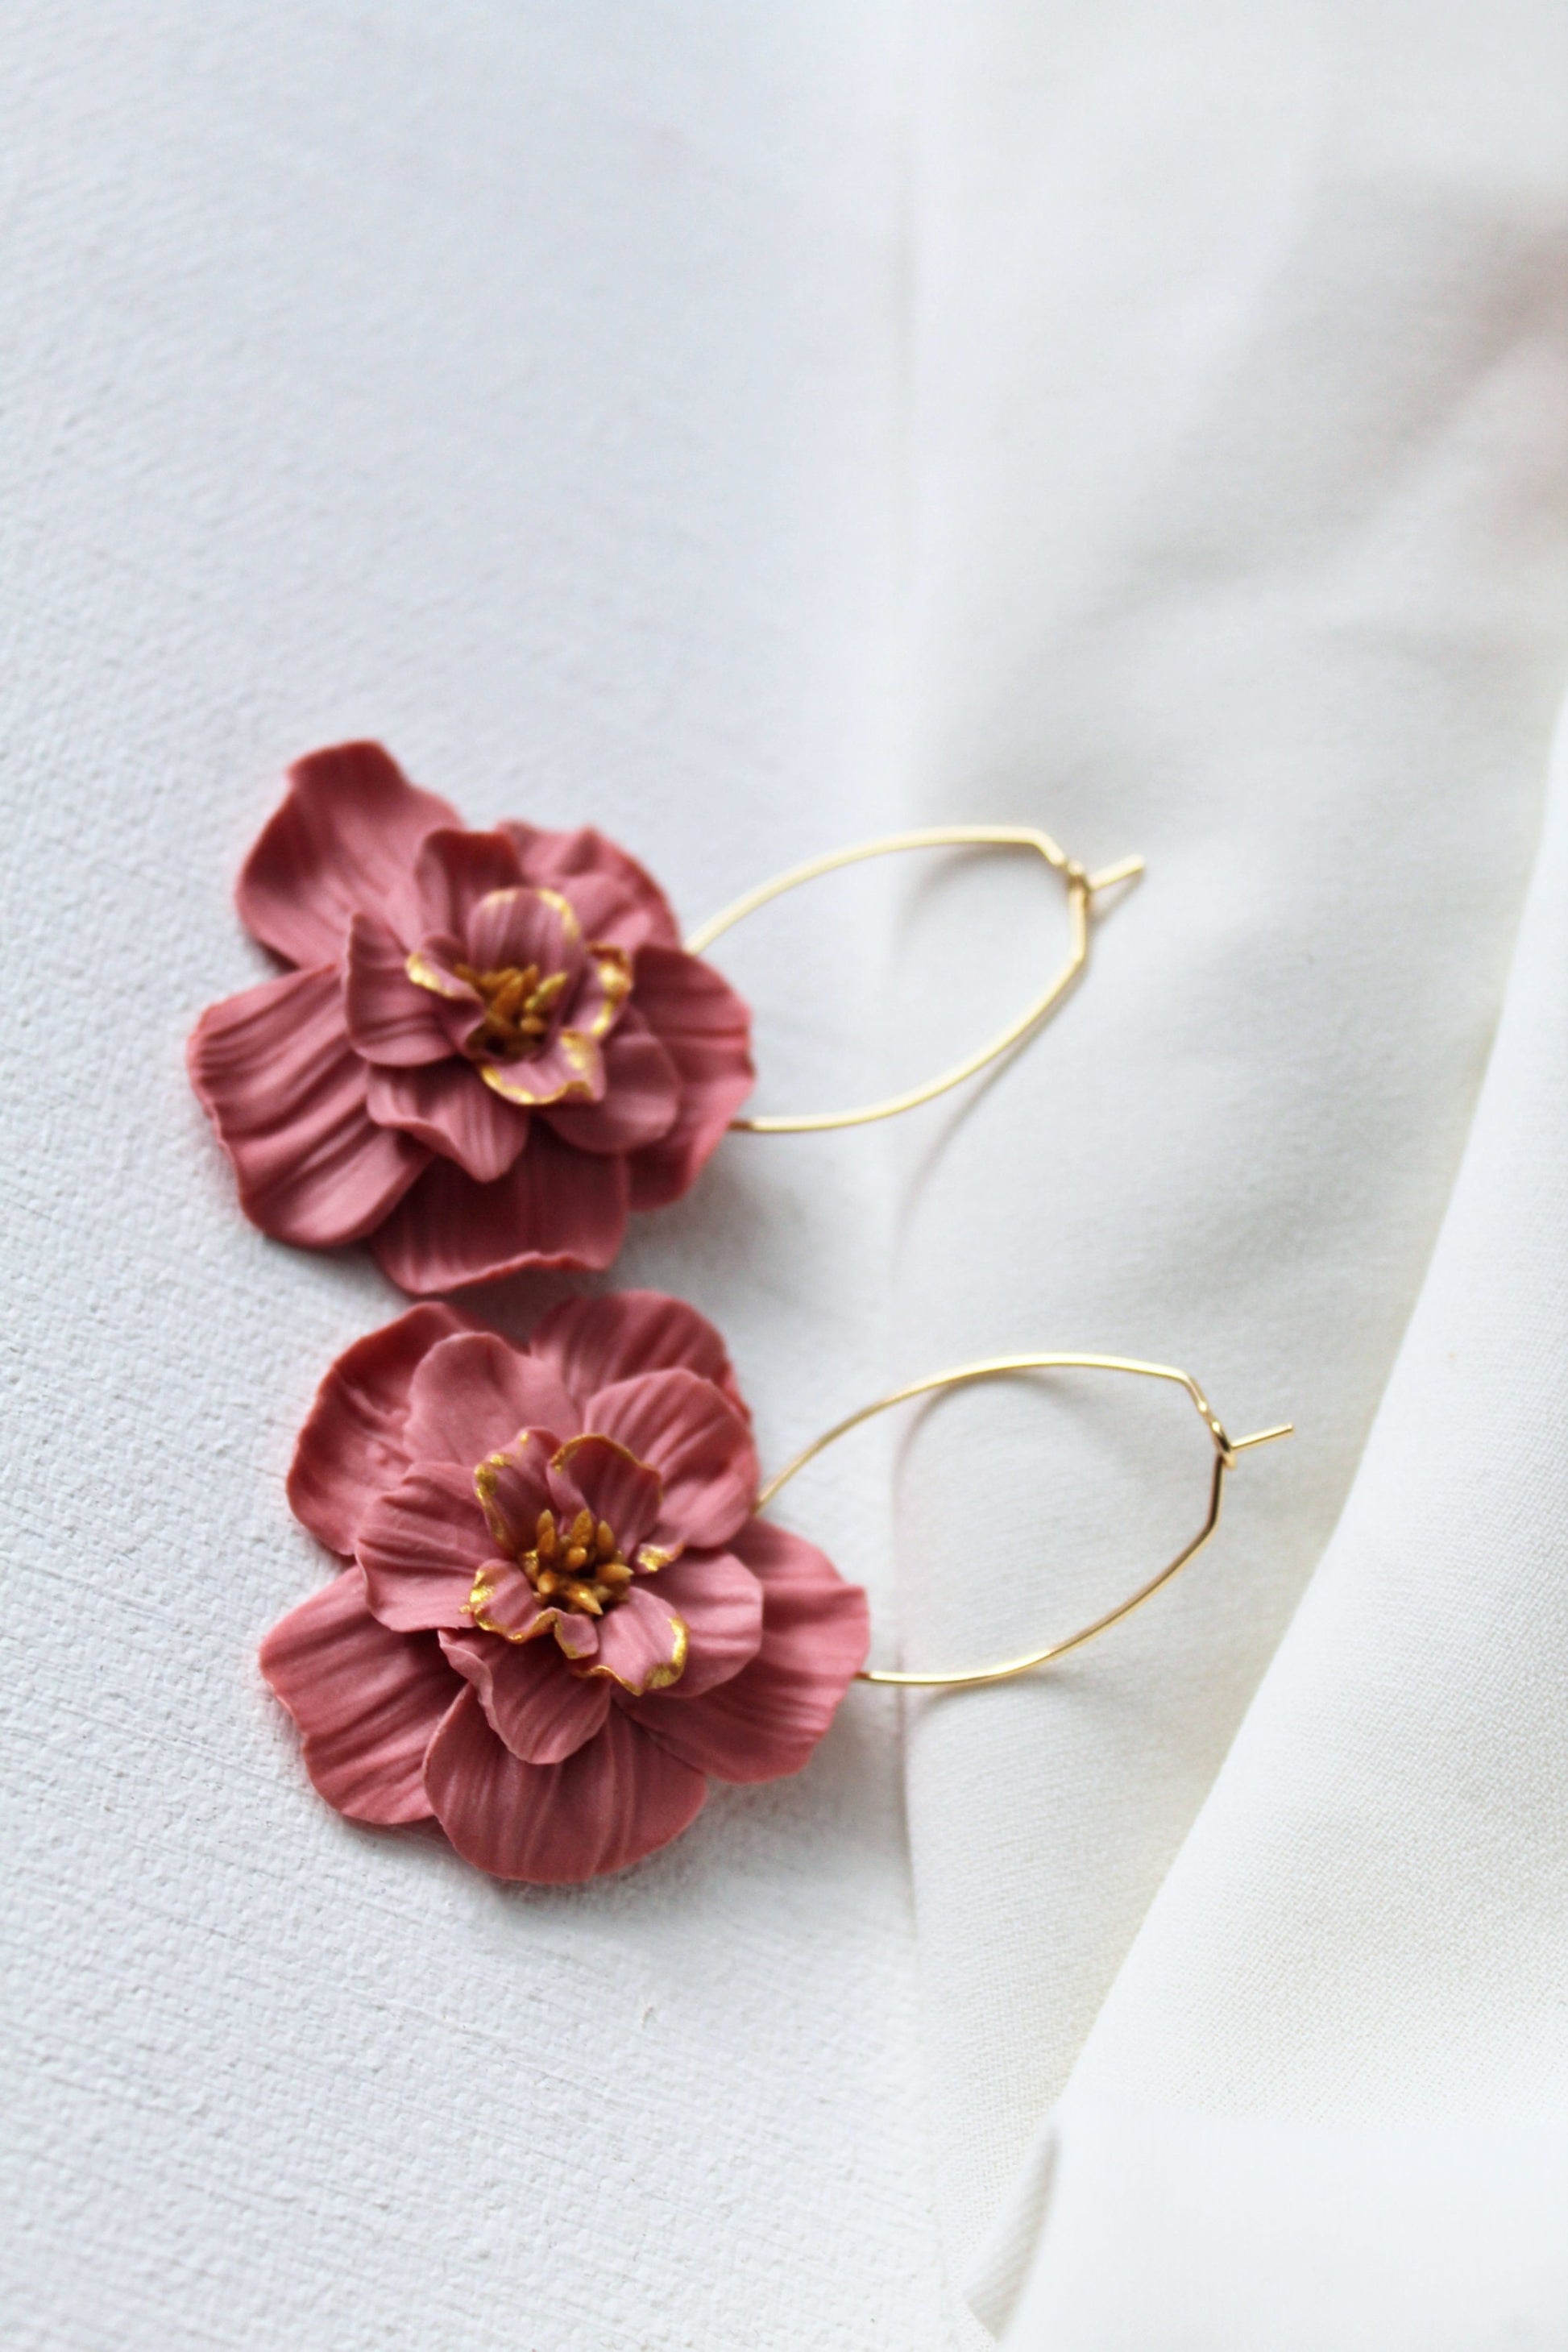 Flower Hoop Earrings, Hoop Earrings, Clay Earrings, Floral Earrings, Pink, Hoops, Spring Earrings, Statement Earrings, Handmade, 18k gold